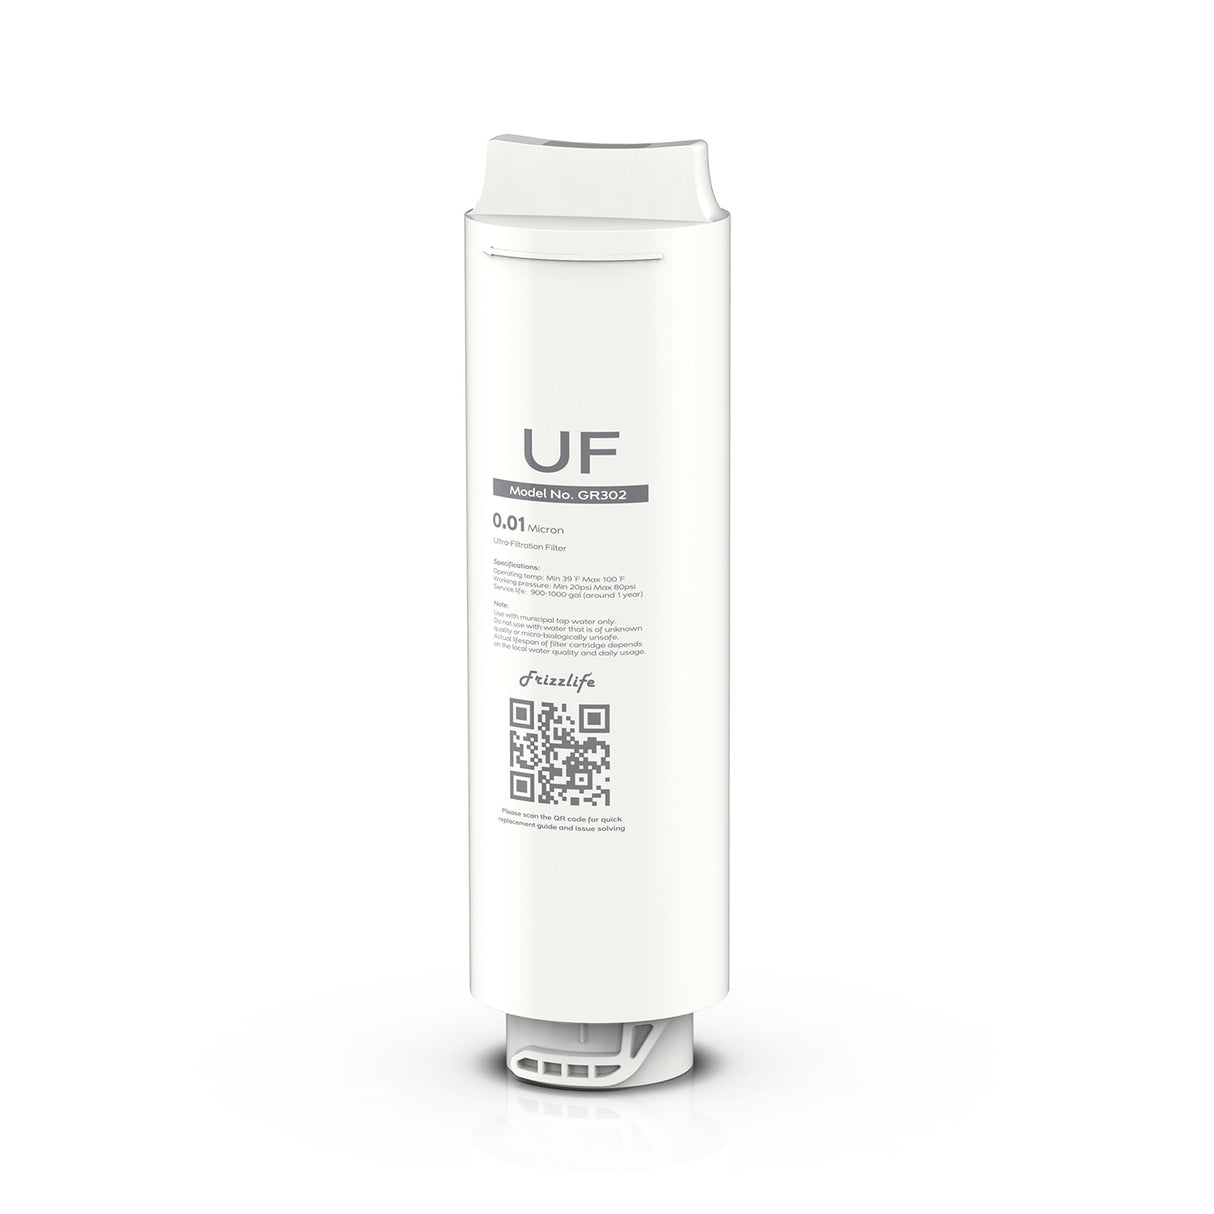 Cartucho de filtro de repuesto Frizzlife GR302 (UF) para filtro de agua de ultrafiltración GX99